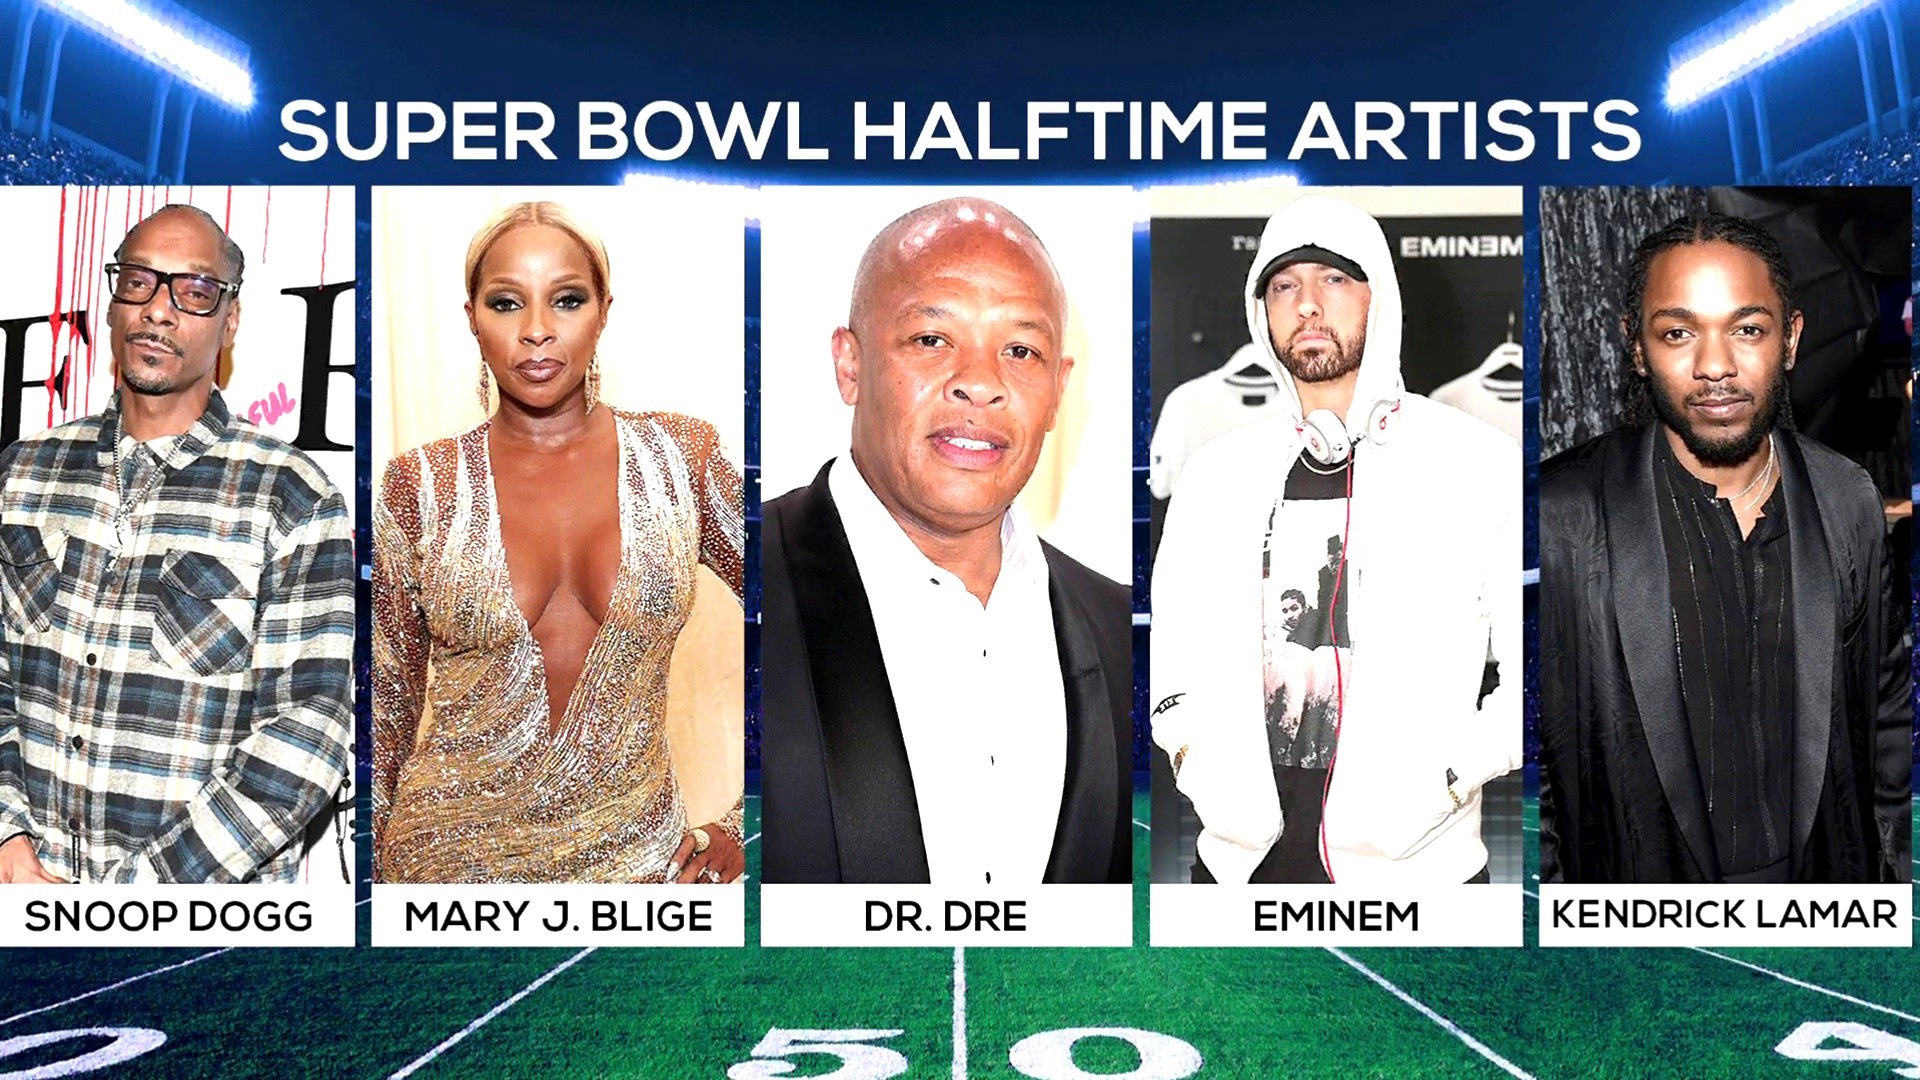 Kendrick Lamar, Eminem, Mary J. Blige among Super Bowl halftime performers